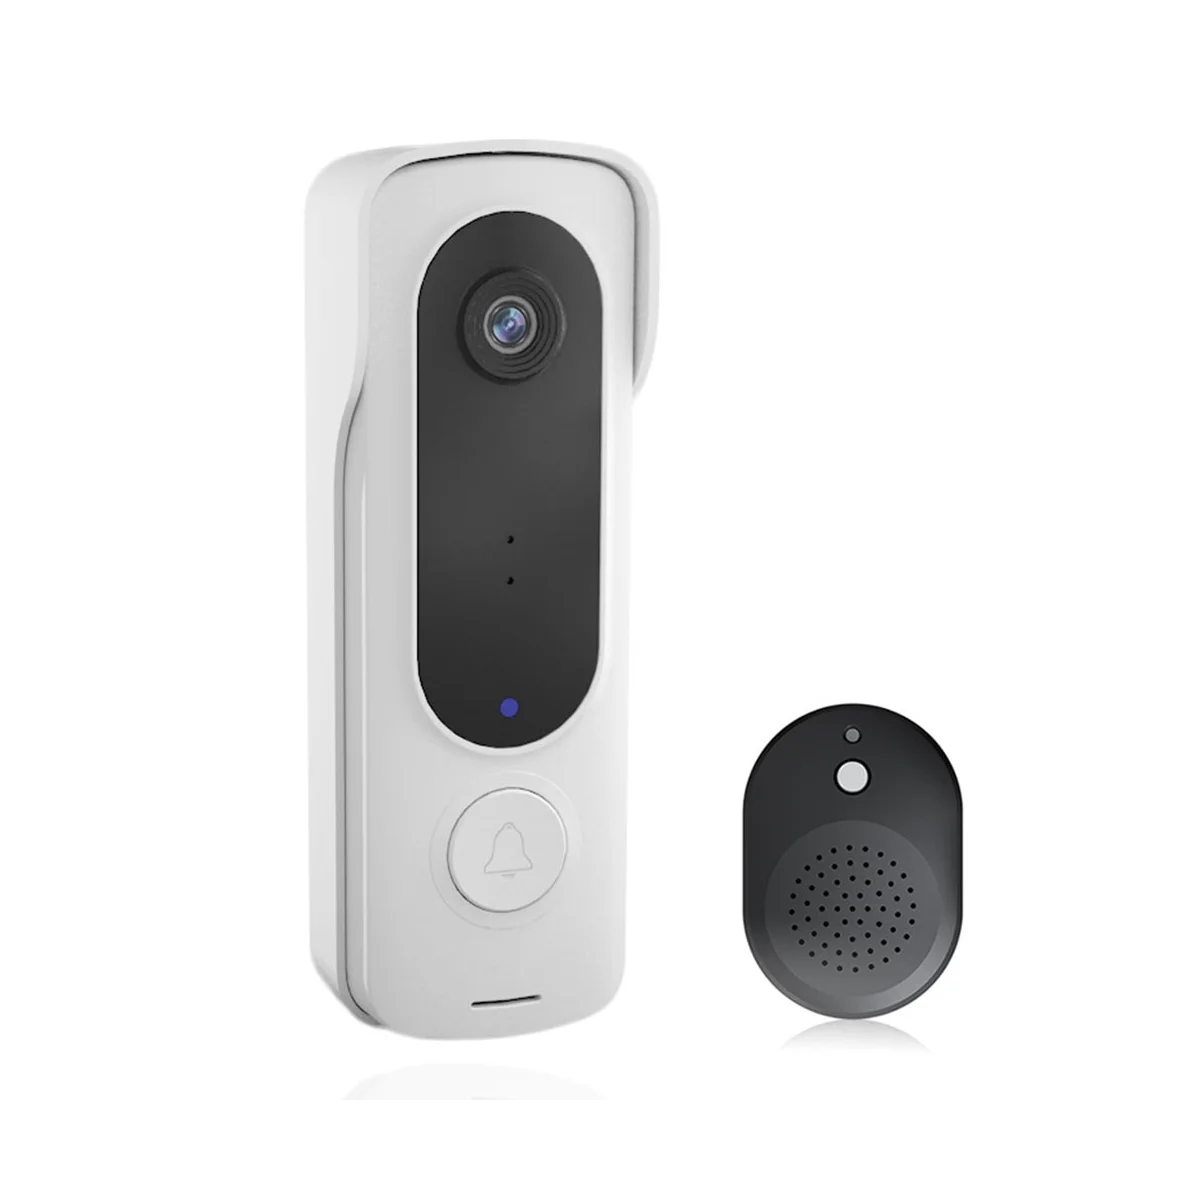 

Smart Wireless Video Doorbell Digital Visual Intercom WIFI Door Bell Electronic Doorbell 480P Home Security Camera